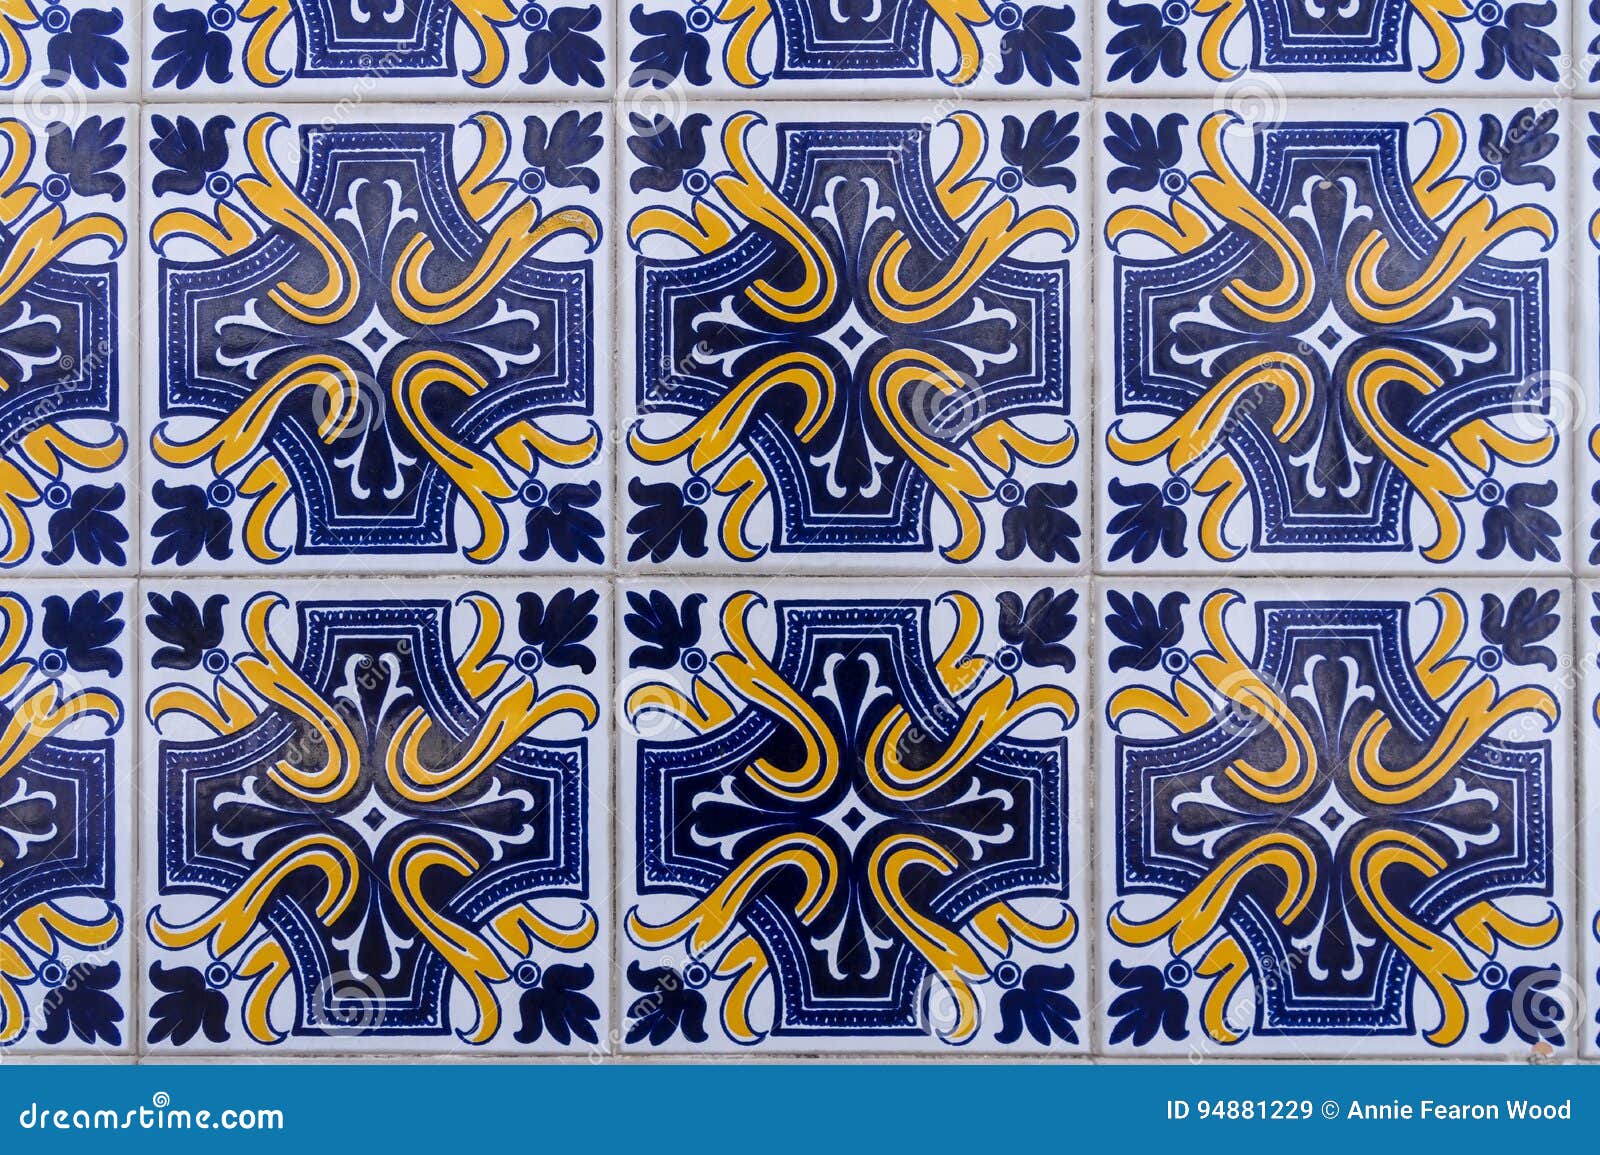 azulejos portuguese tiles